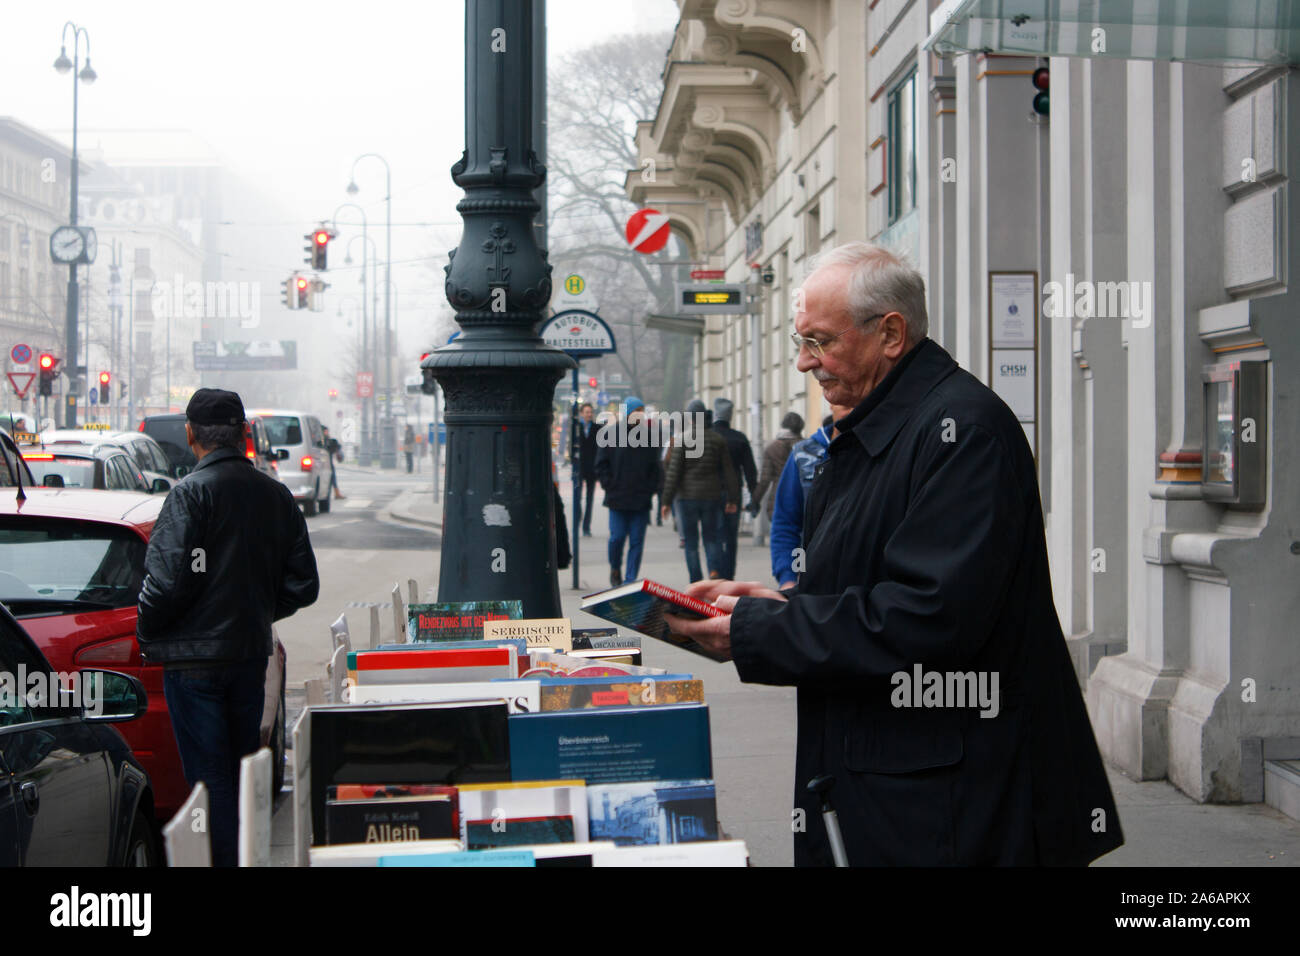 An elderly gentleman browsing books in a street book stand in Vienna, Austria. Stock Photo